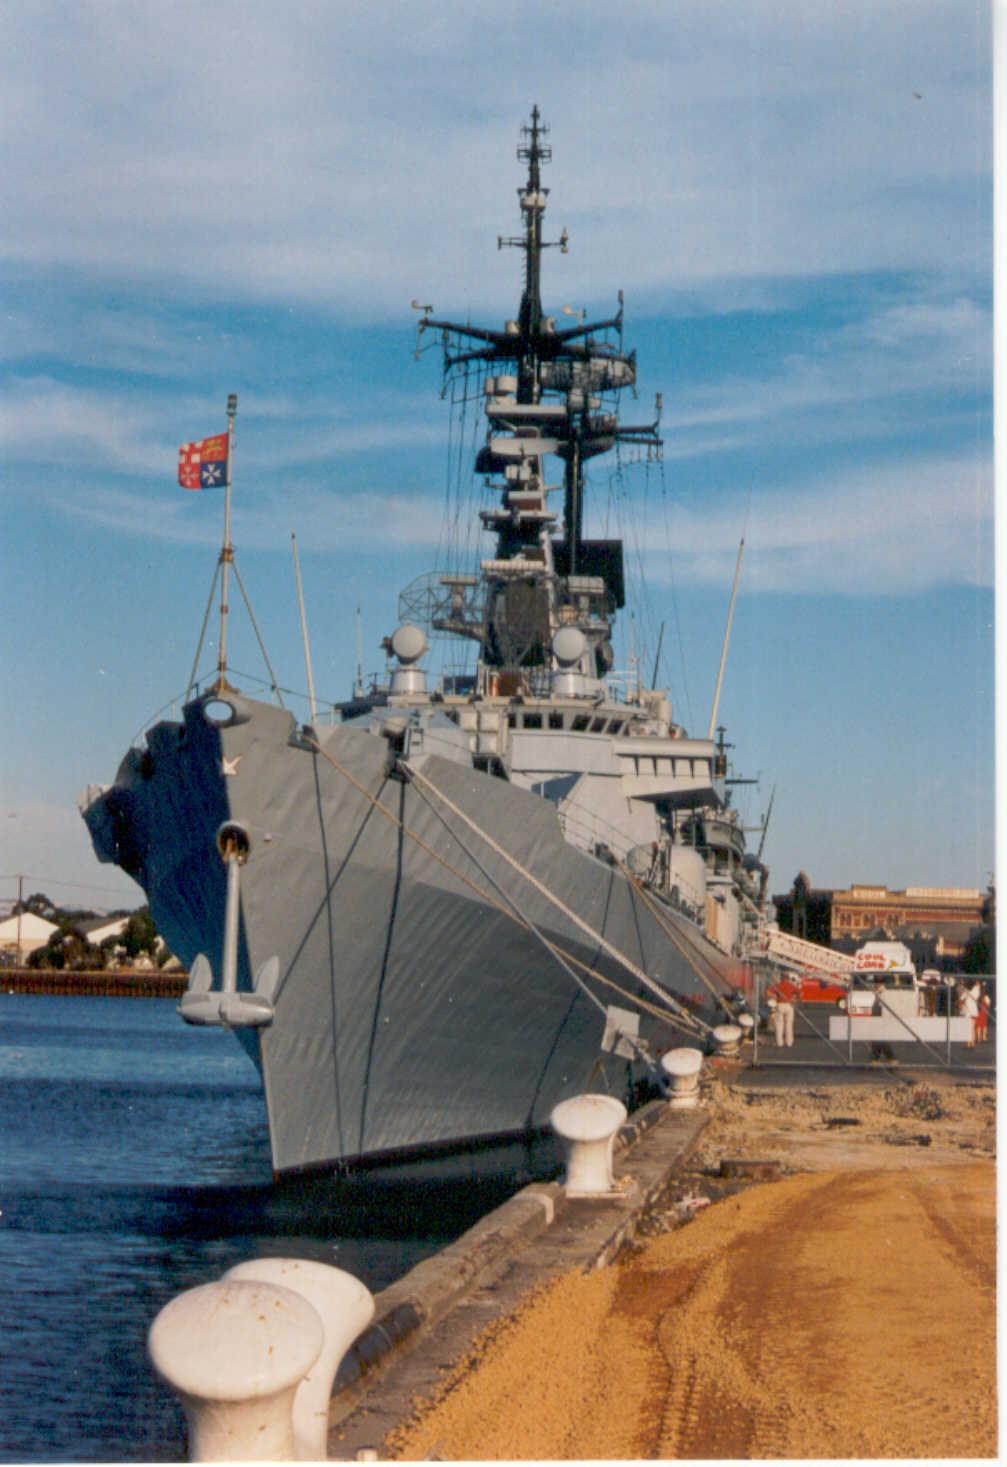 At Port Adelaide berth during 1997 visit.